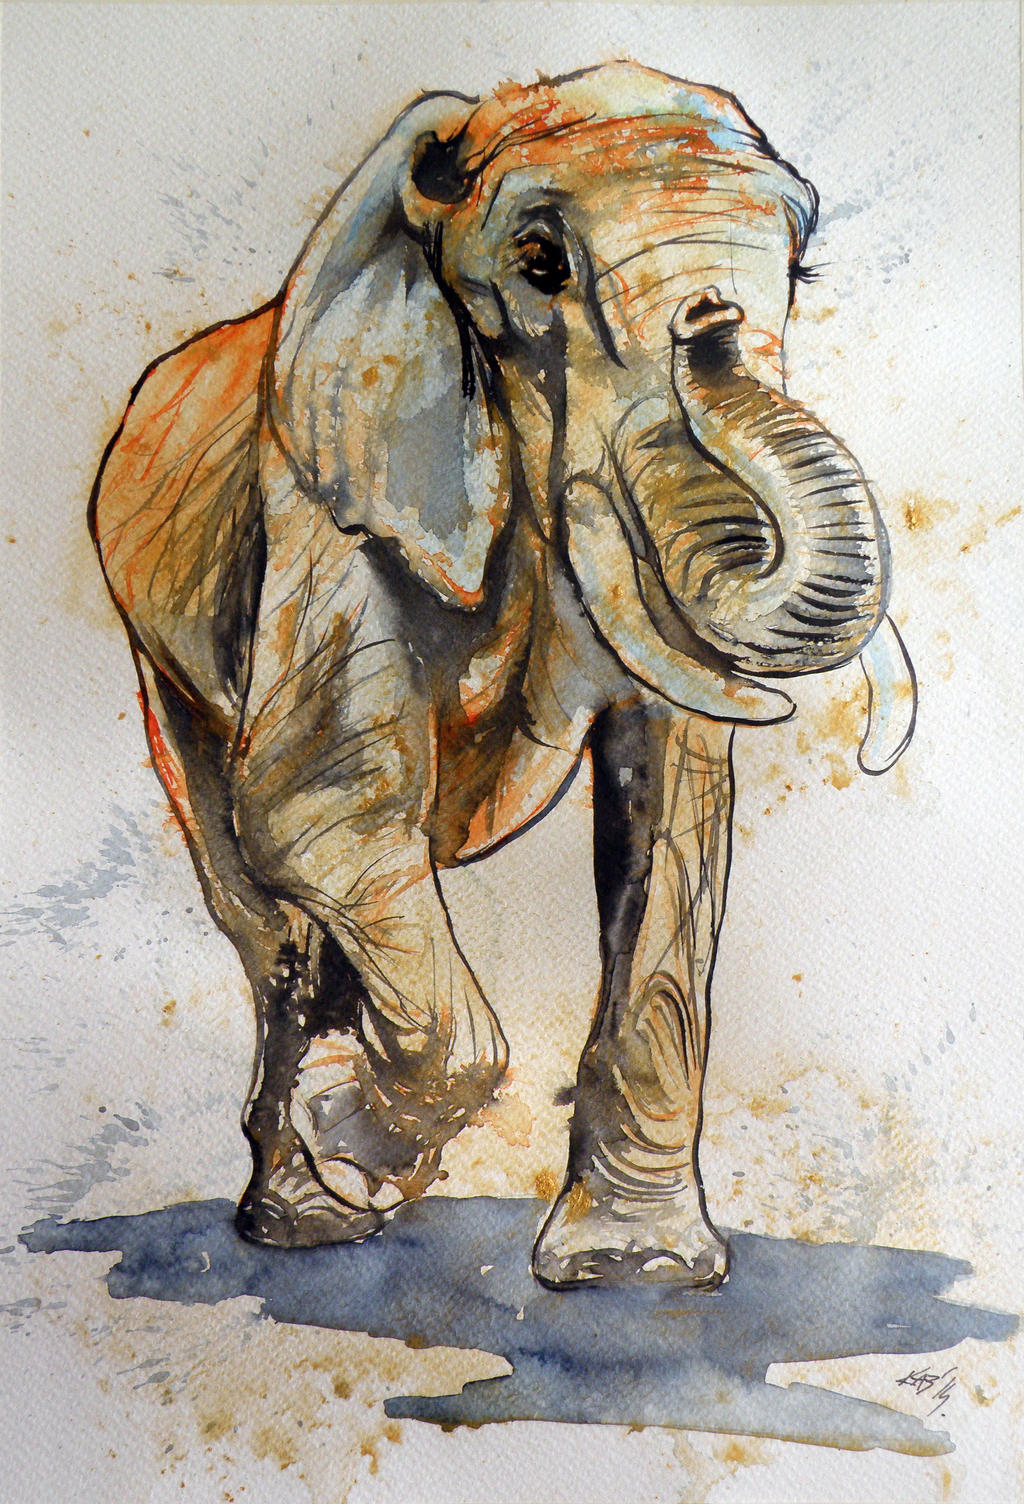 Elelphant in gold by kovacsannabrigitta on DeviantArt